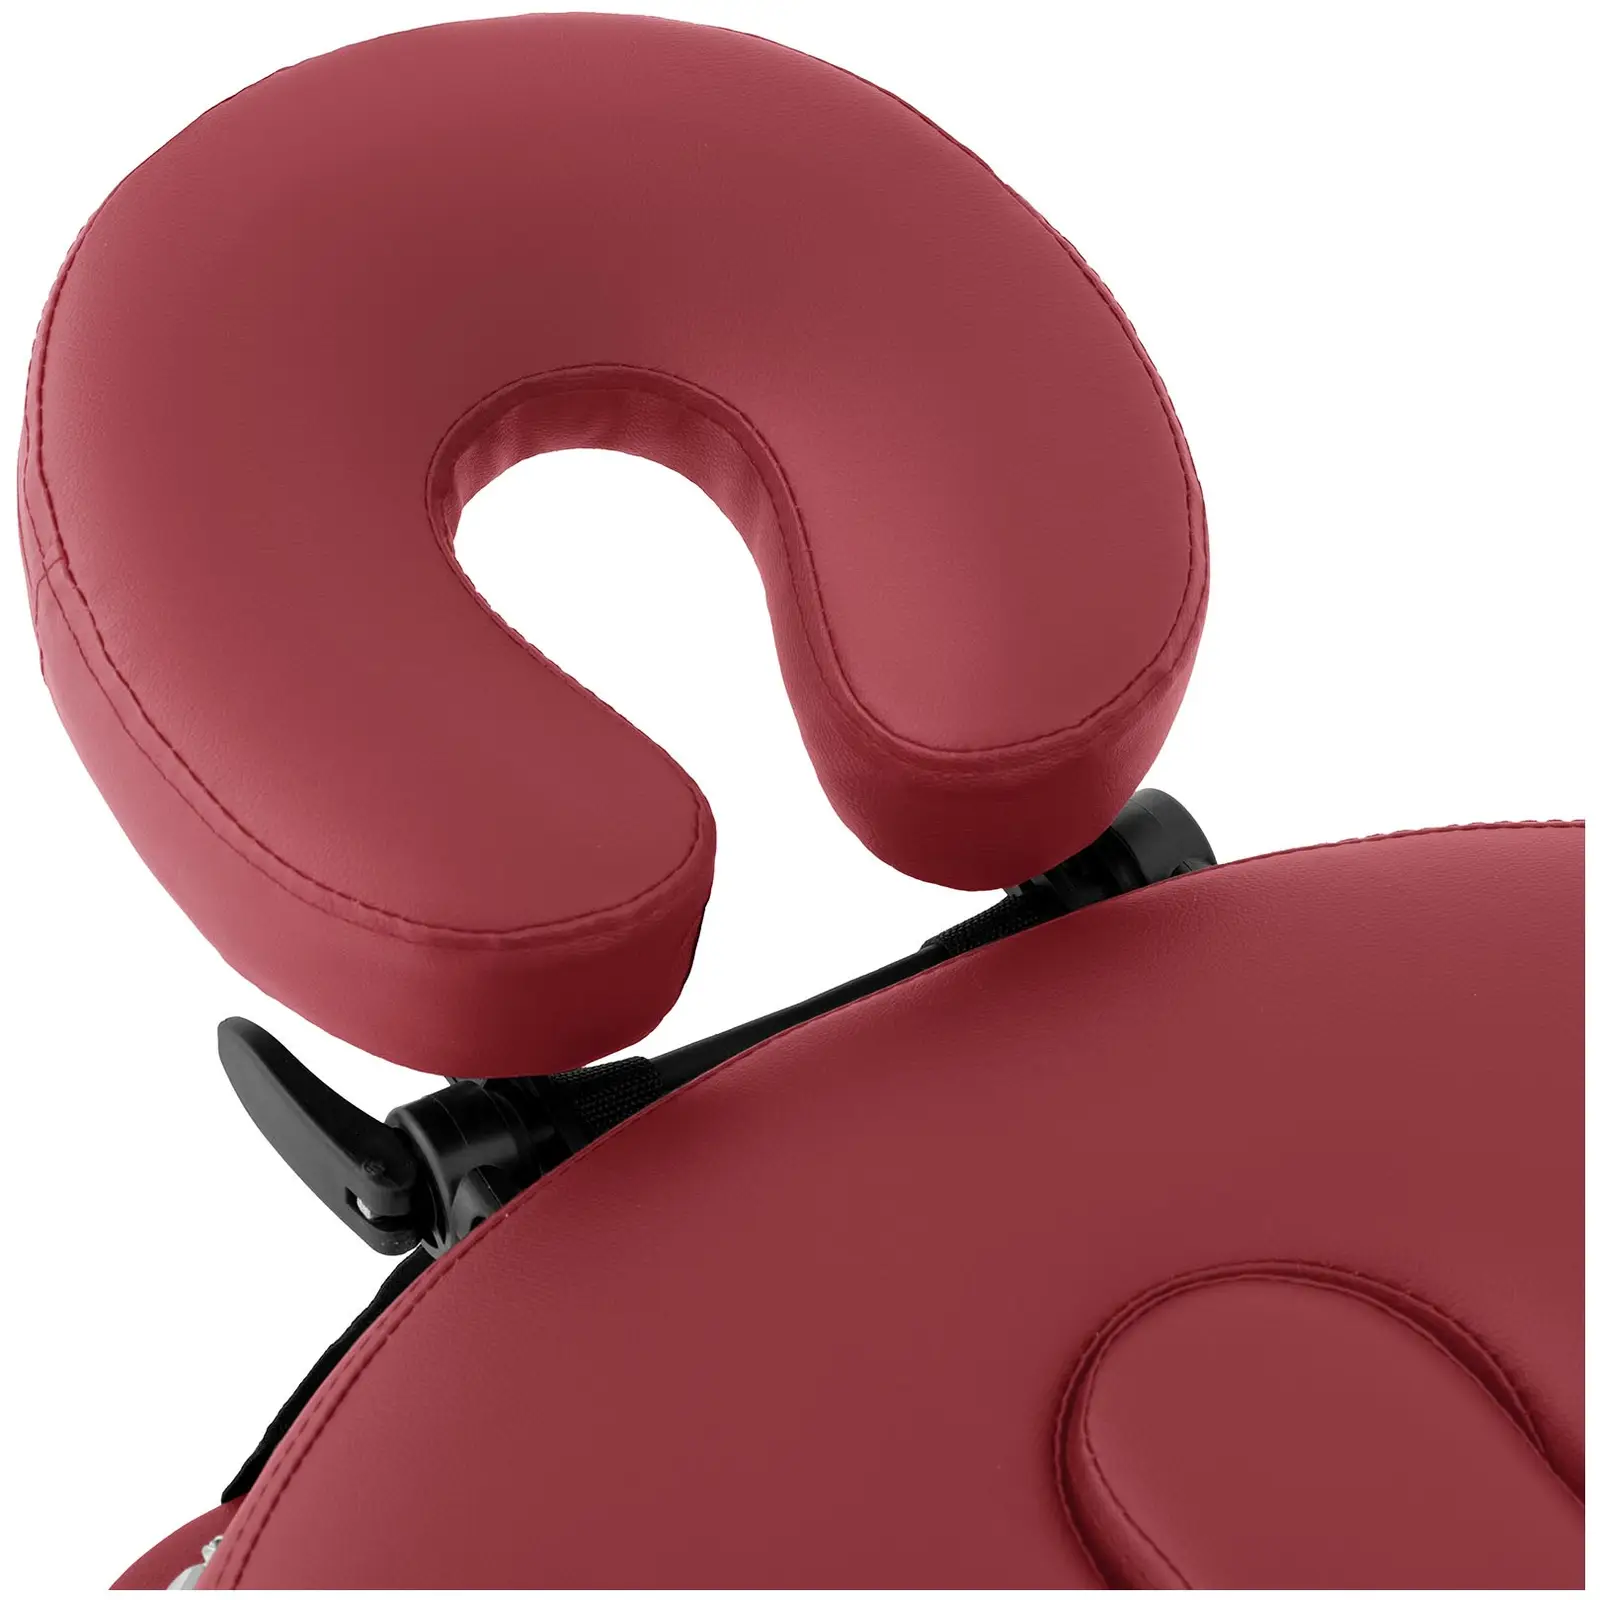 Hopfällbar massagebänk - 185-211 x 70-88 x 63-85  cm - 227 kg - Röd